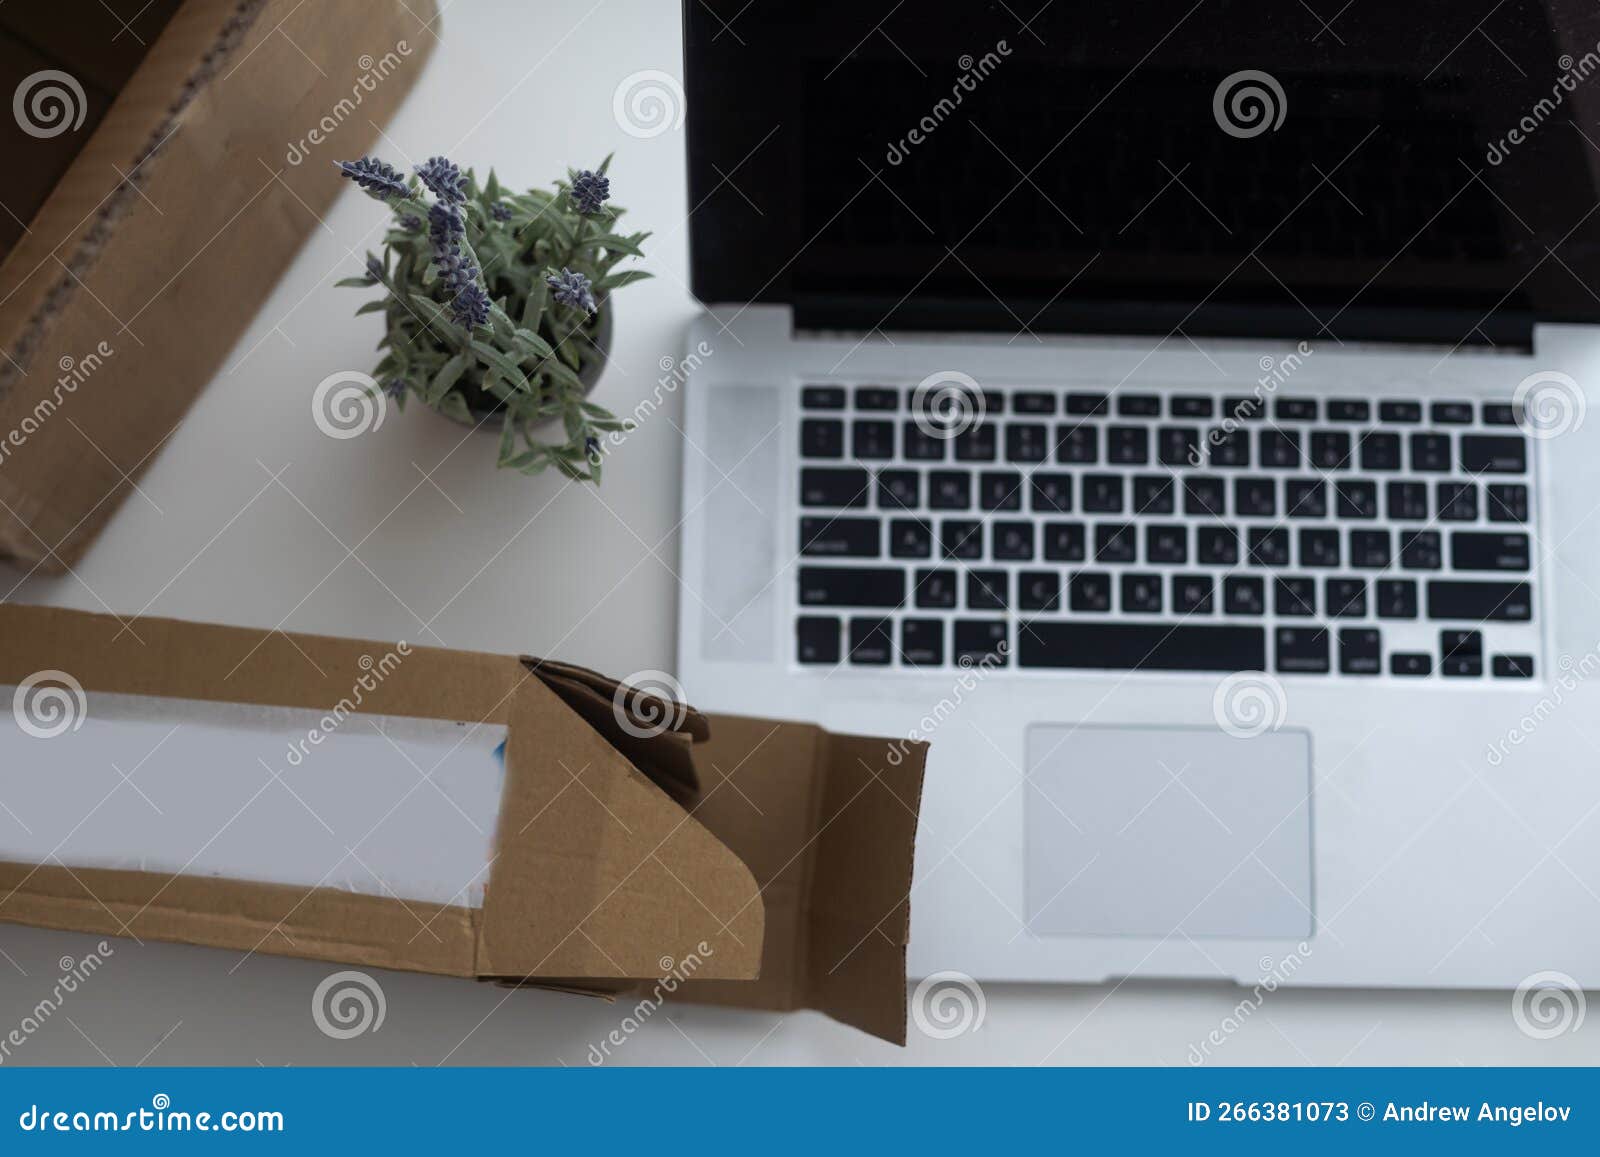 shopping online e-comerce, parcel boxes on a laptop.